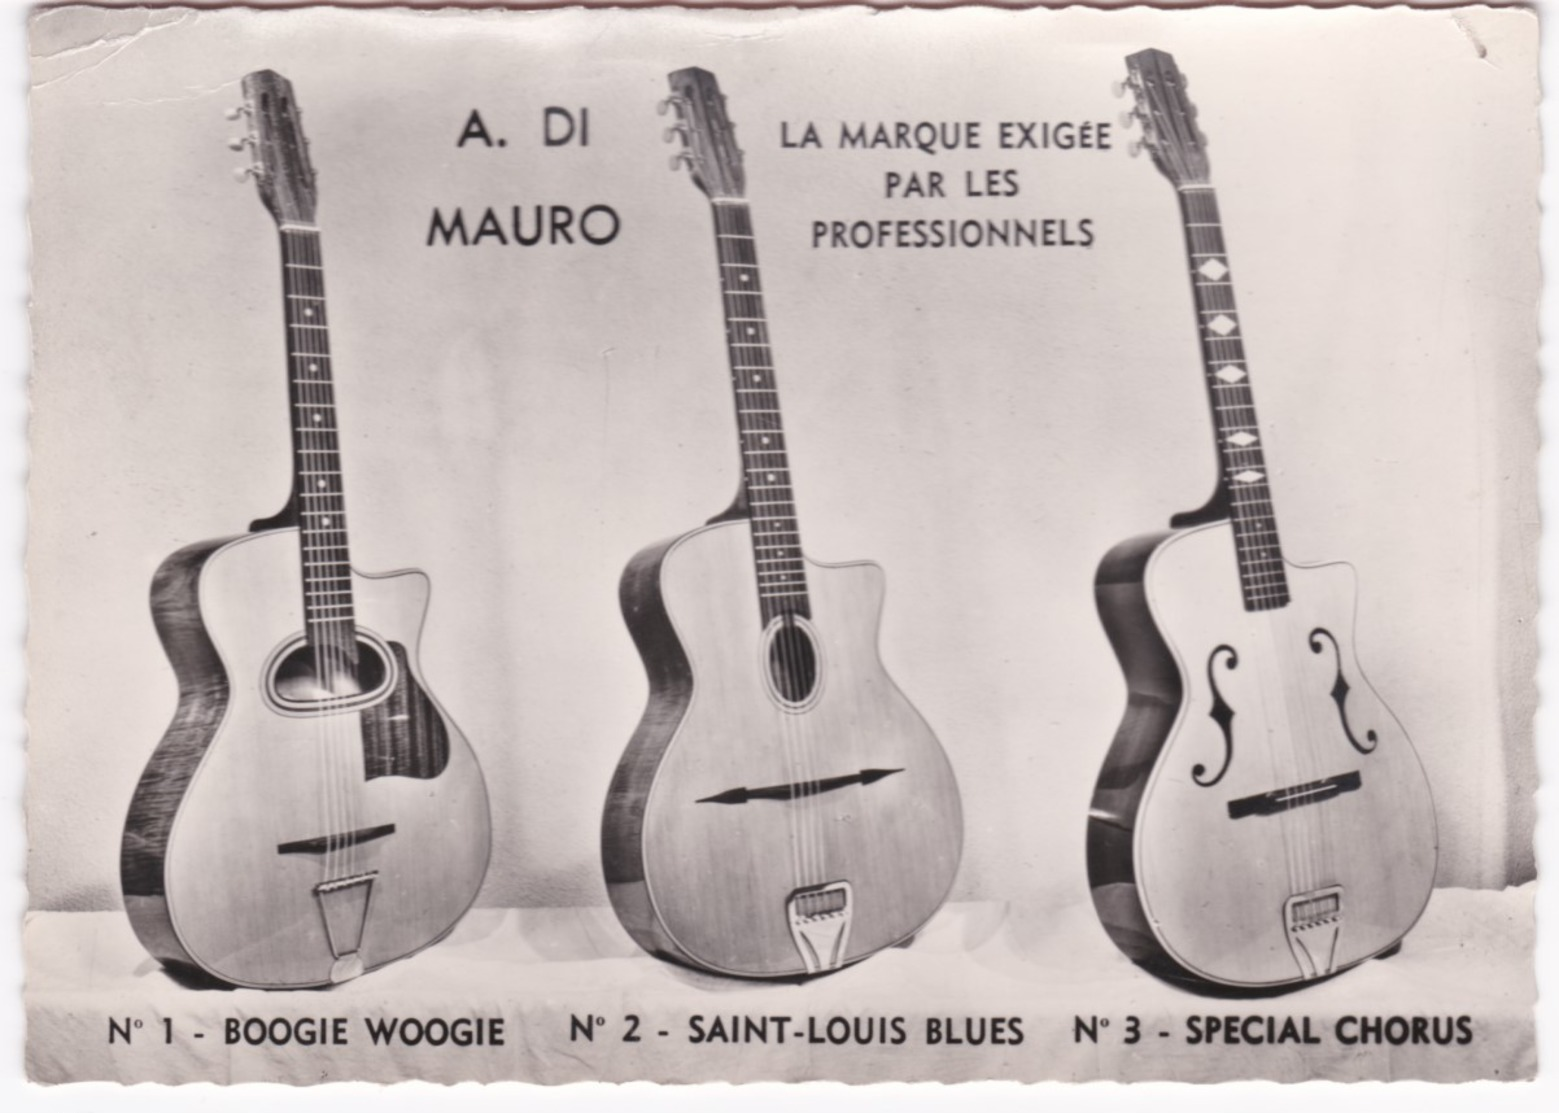 A. DI MAURO - Guitares De Jazz - Boogie Woogie 12 Cases - Saint-Louis Blues 14 Cases Touche Bombée - Chorus 14 Cases - Music And Musicians